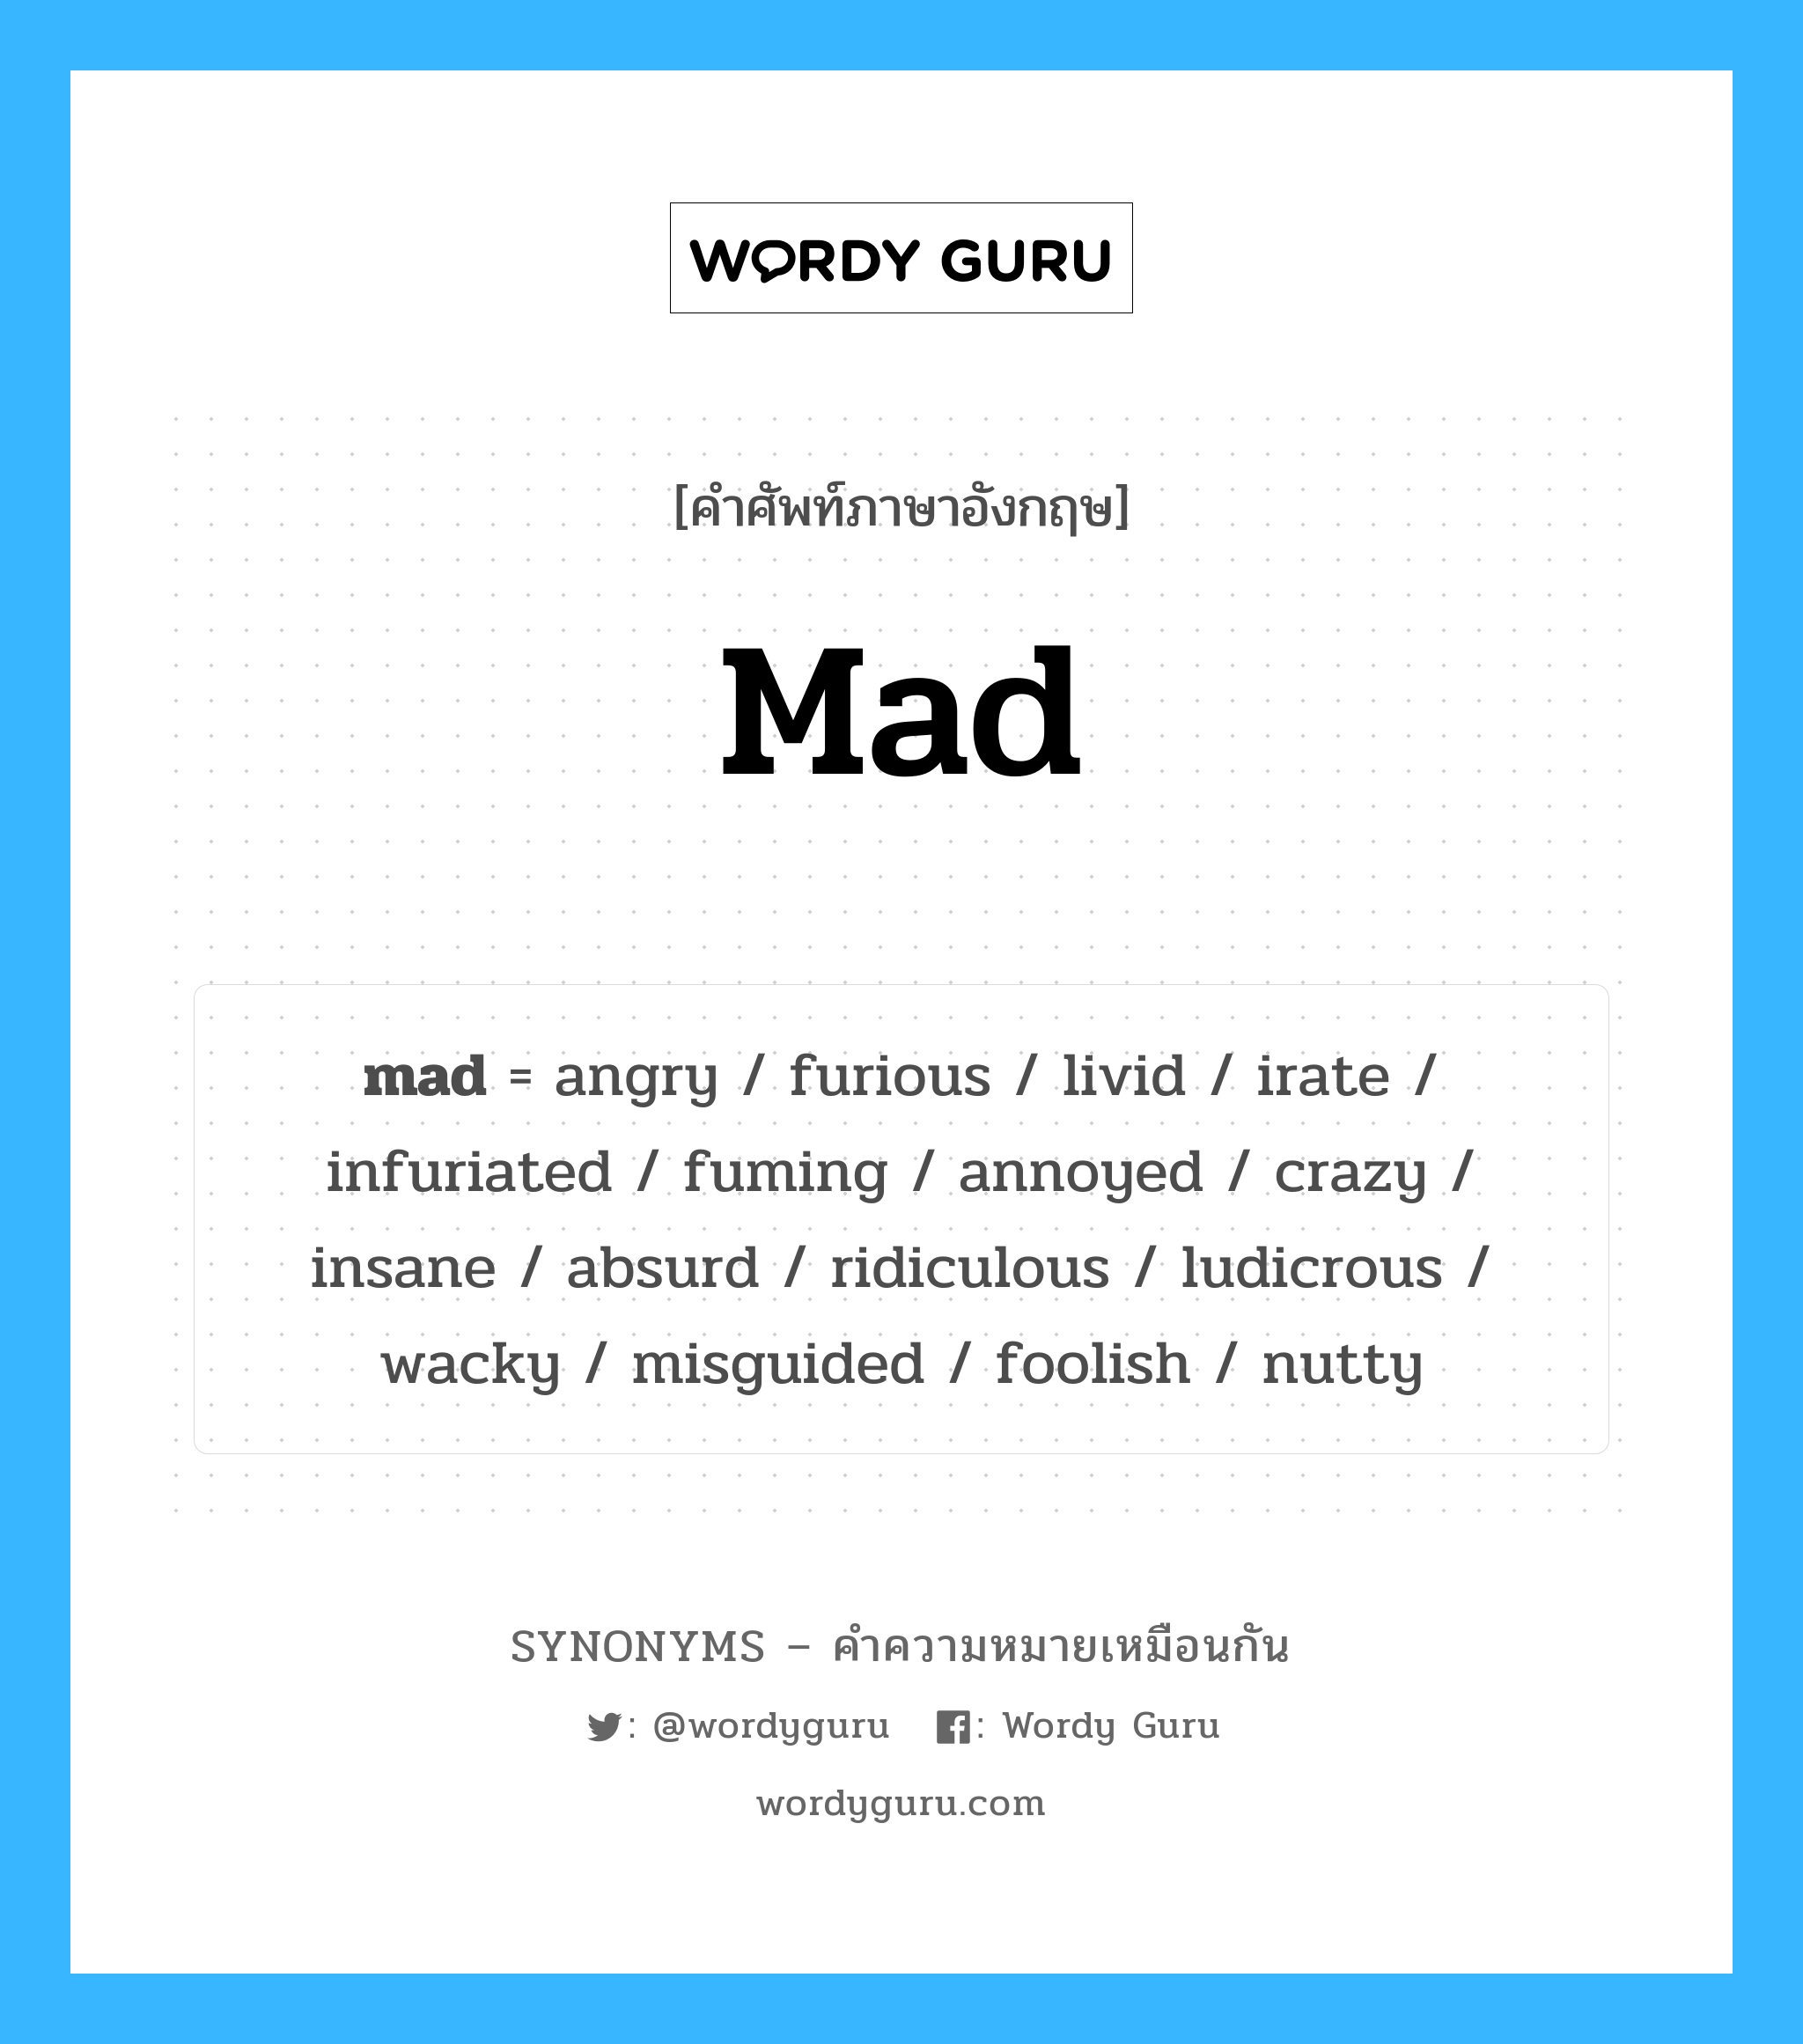 absurd เป็นหนึ่งใน mad และมีคำอื่น ๆ อีกดังนี้, คำศัพท์ภาษาอังกฤษ absurd ความหมายคล้ายกันกับ mad แปลว่า ไร้สาระ หมวด mad